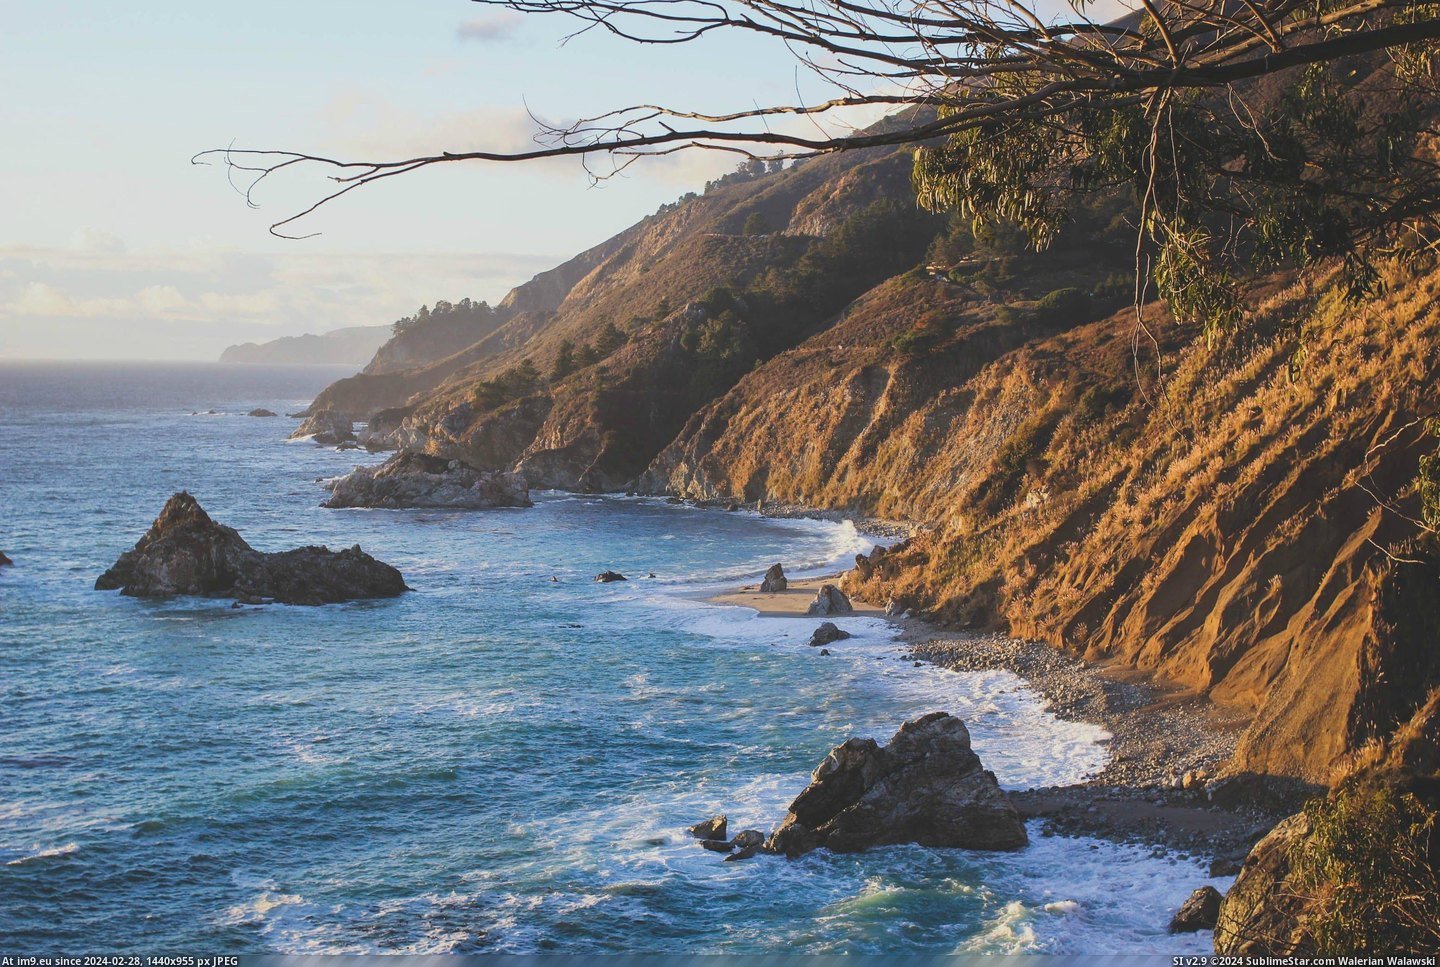 #Big #California #Sur #Golden #Coast [Earthporn] the golden coast: big sur, california [3456 x 2304] [OC] Pic. (Image of album My r/EARTHPORN favs))